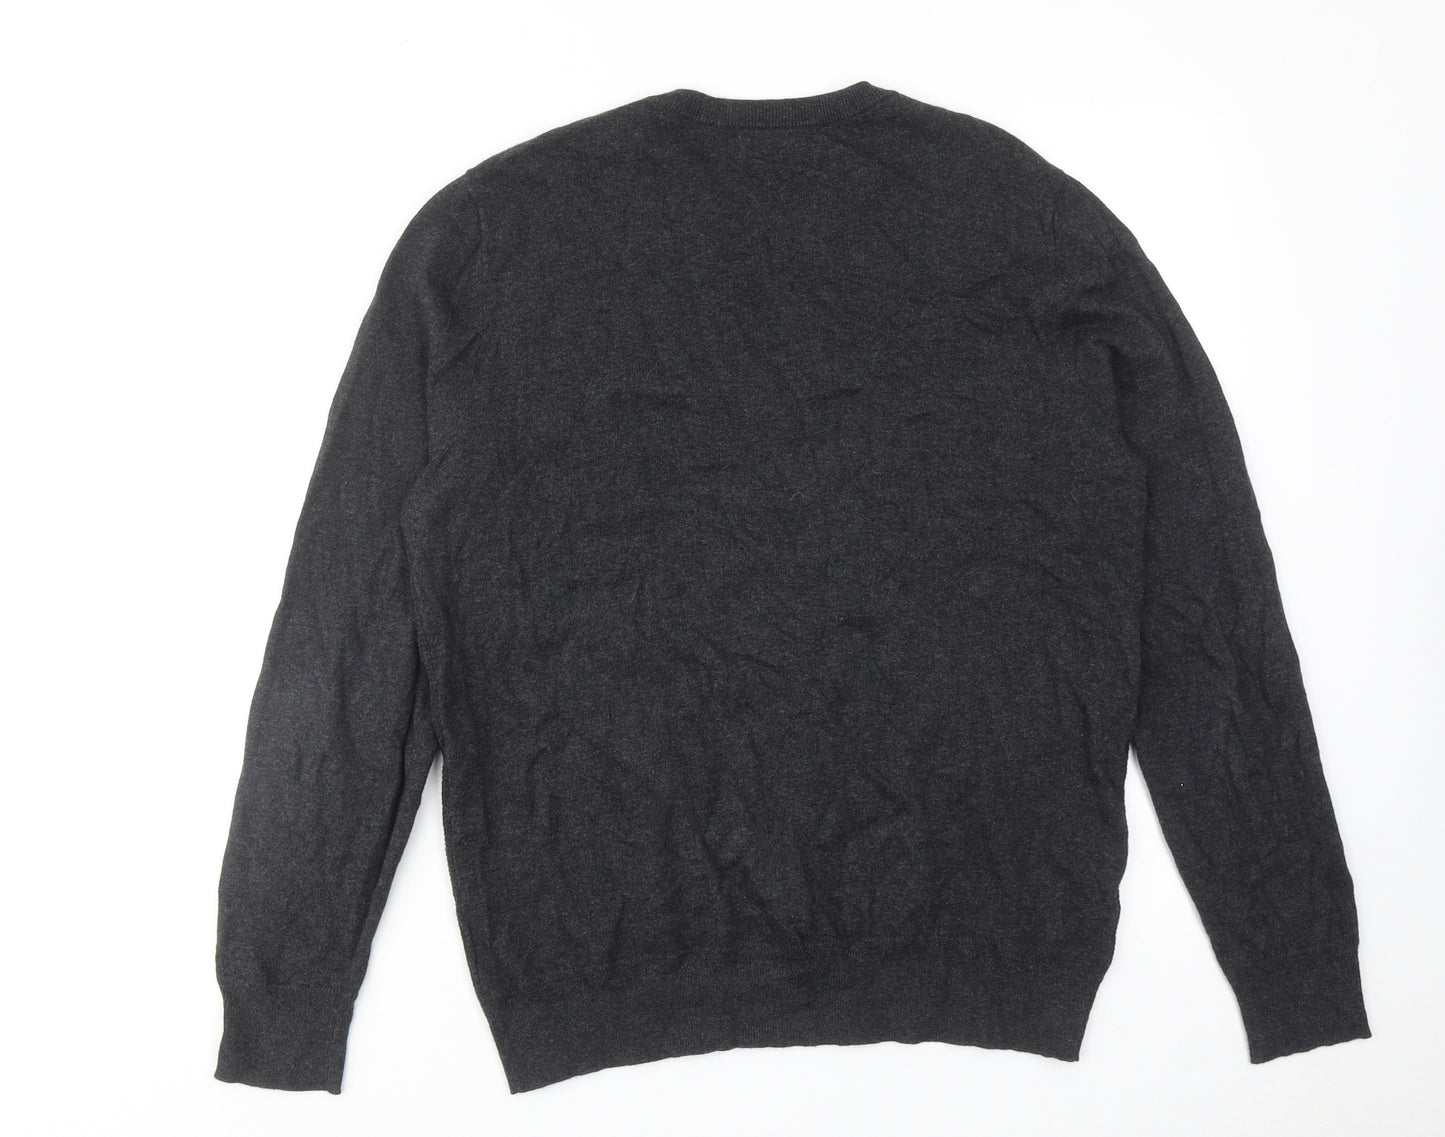 Debenhams Mens Grey V-Neck Cotton Pullover Jumper Size M Long Sleeve